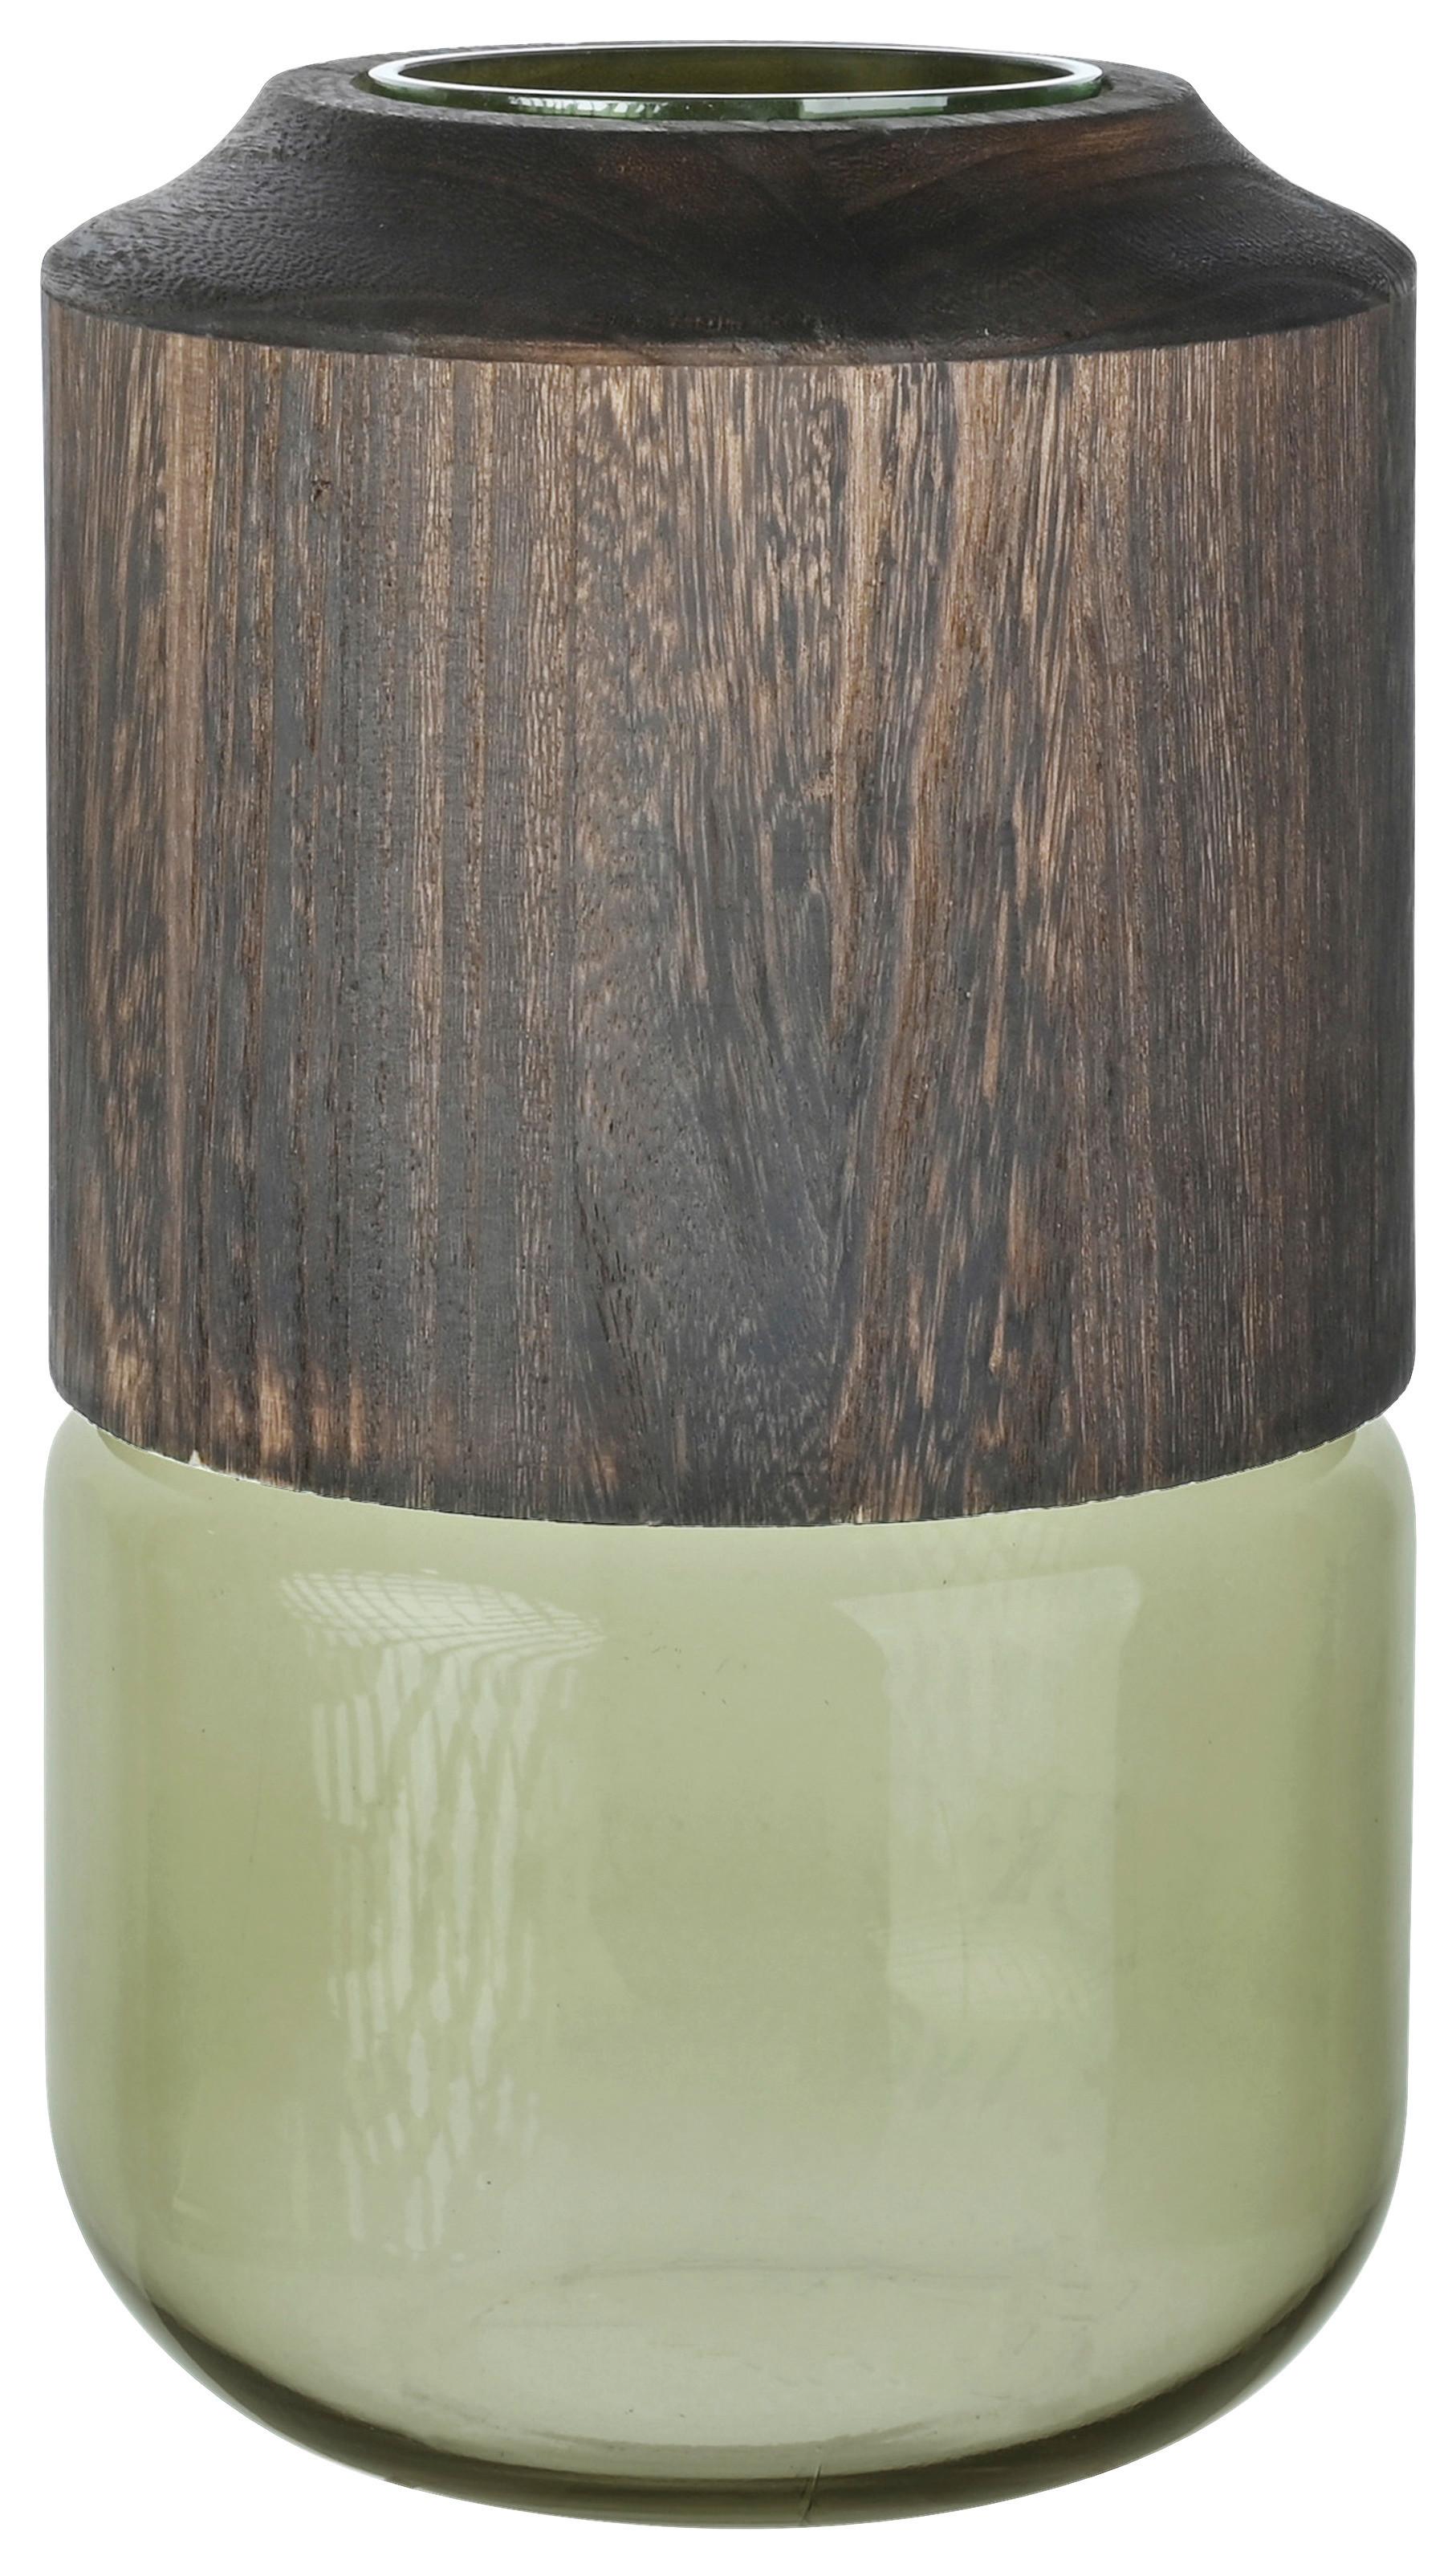 Vaza Wood -Paz- - zelena/rjava, steklo/les (19/32cm) - Premium Living